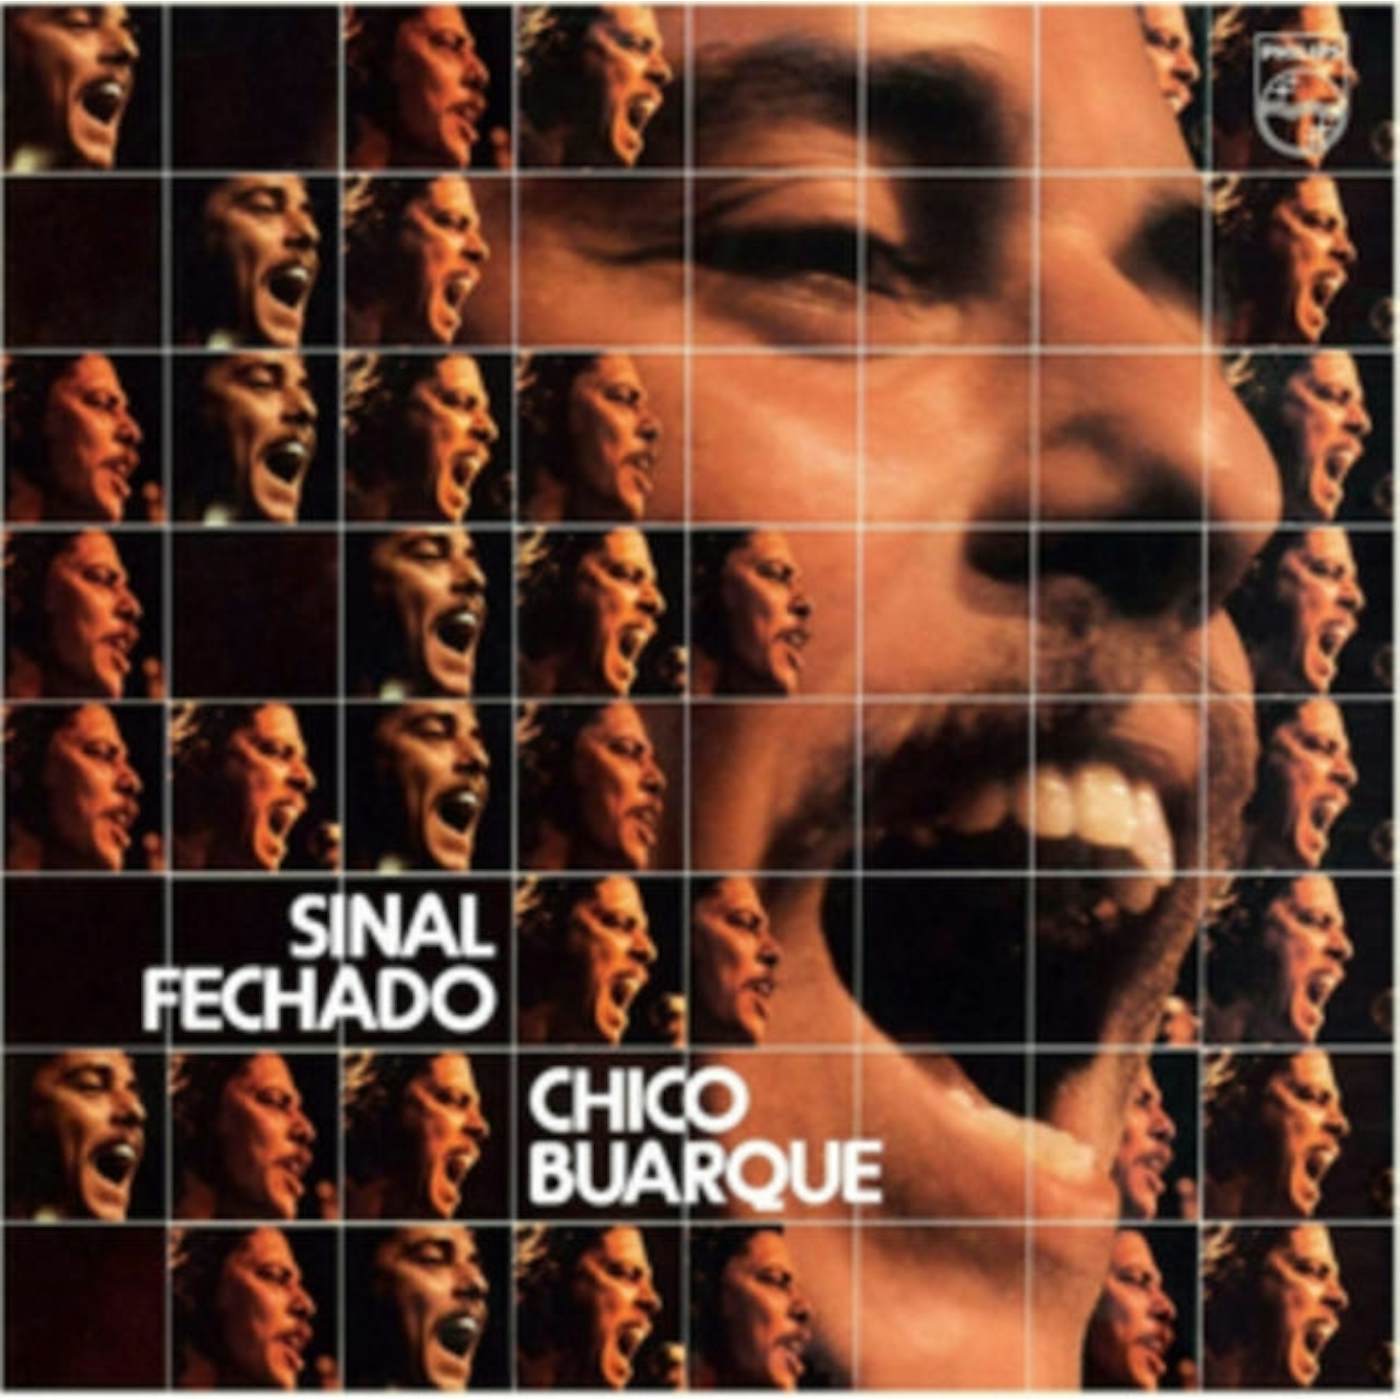 Chico Buarque LP Vinyl Record - Sinal Fechado